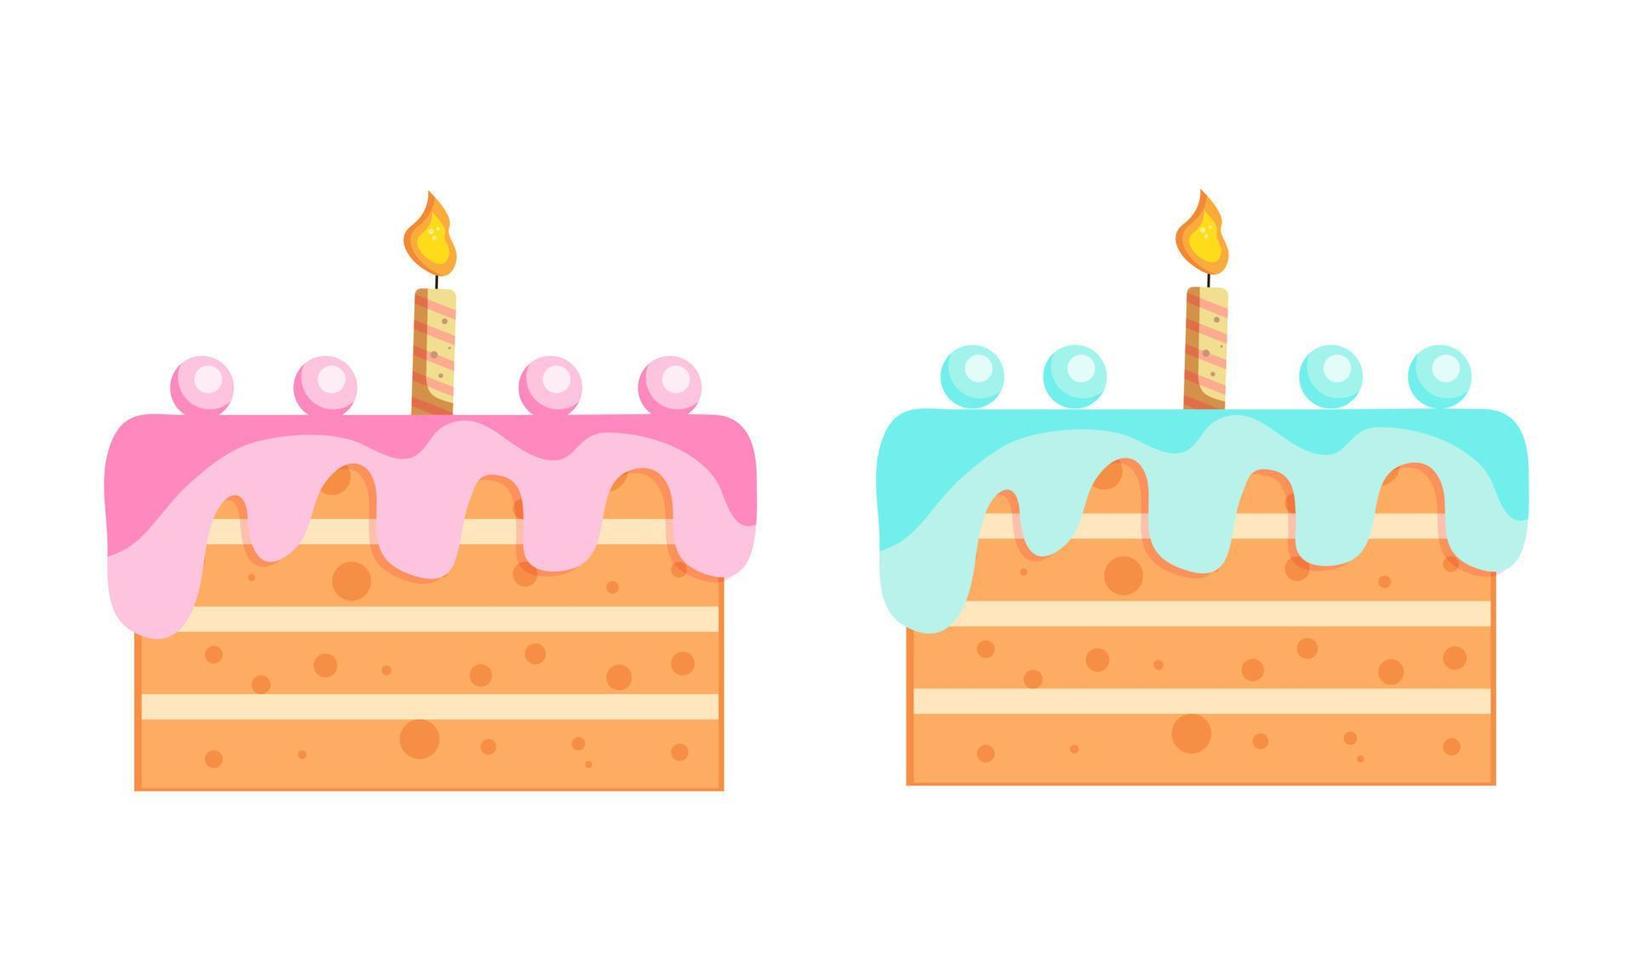 blu e rosa compleanno torta con candele. compleanno festa elementi. decorazione compleanno torta. vettore illustrazione